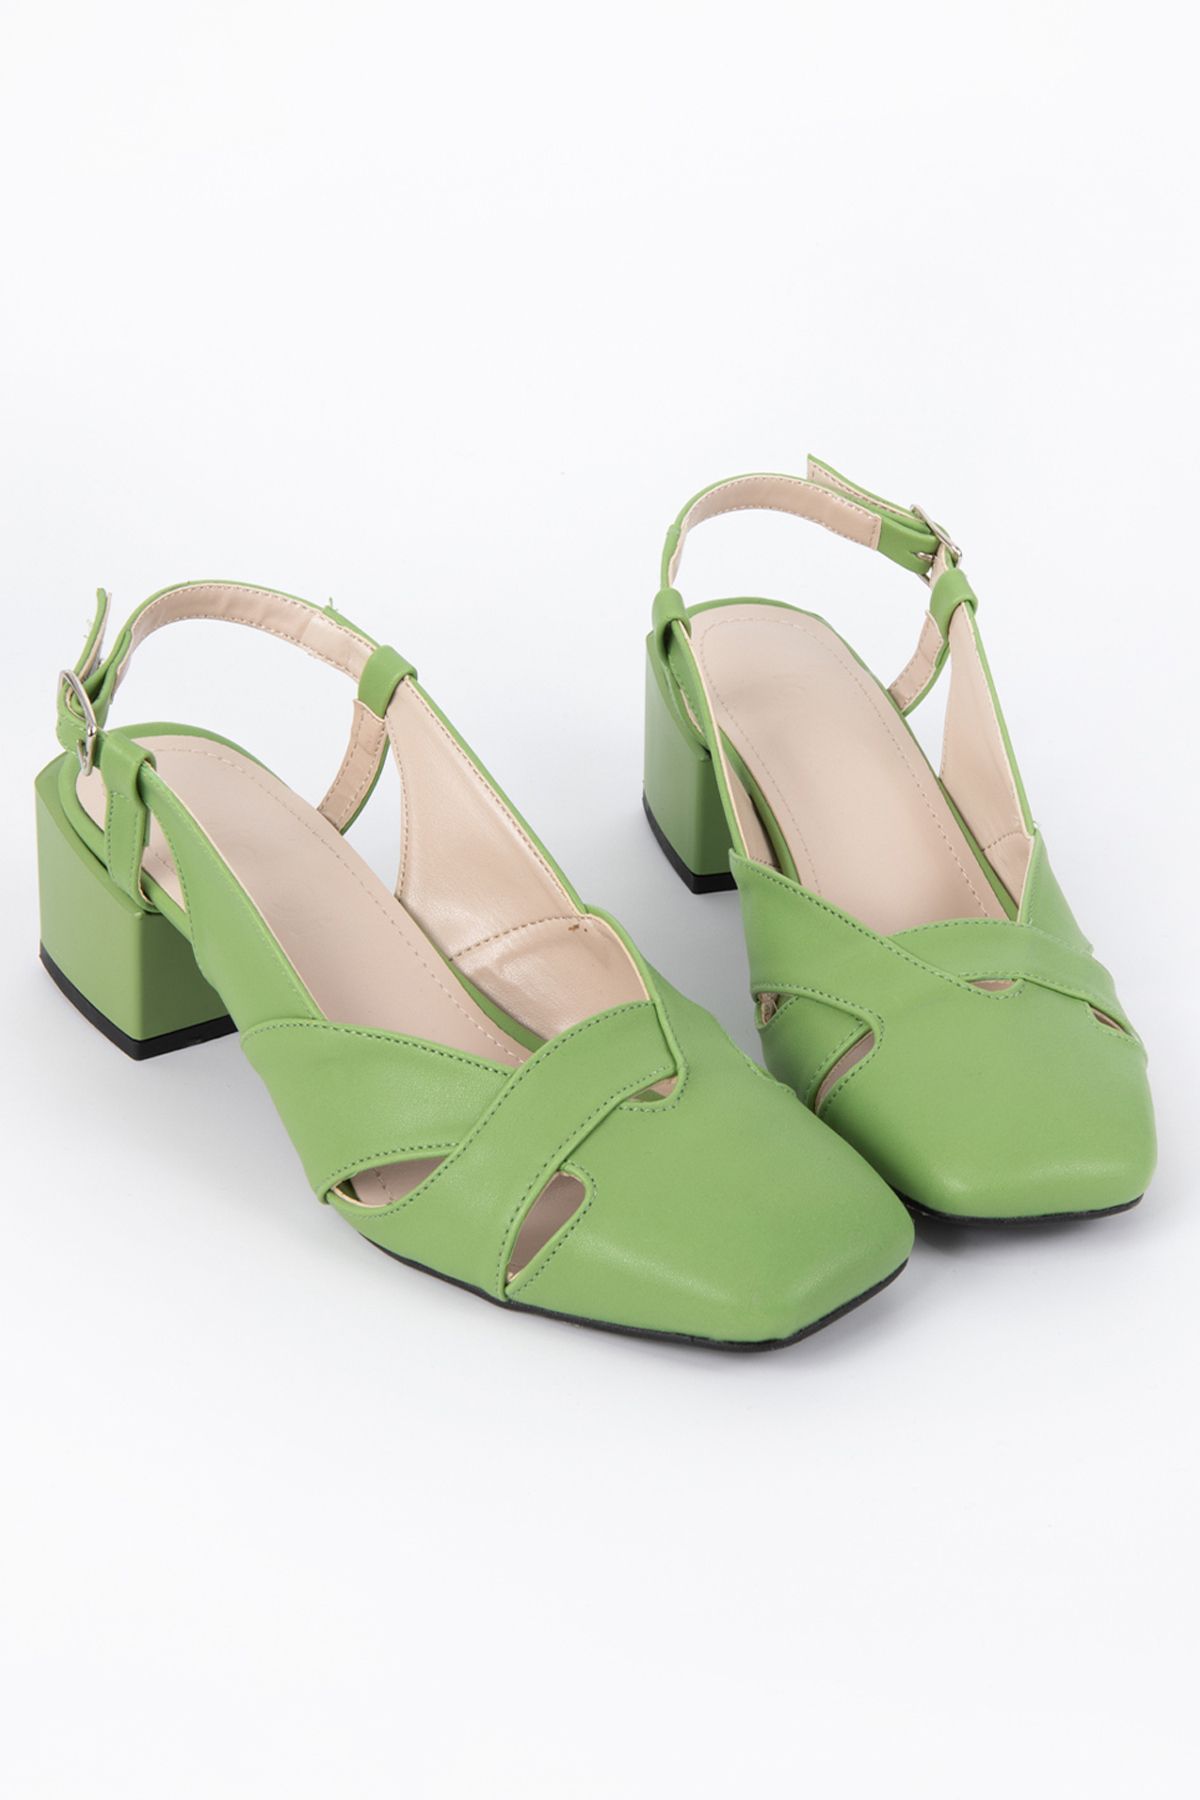 Diardi Kadın Açık Yeşil Rengi Topuklu Ayakkabı